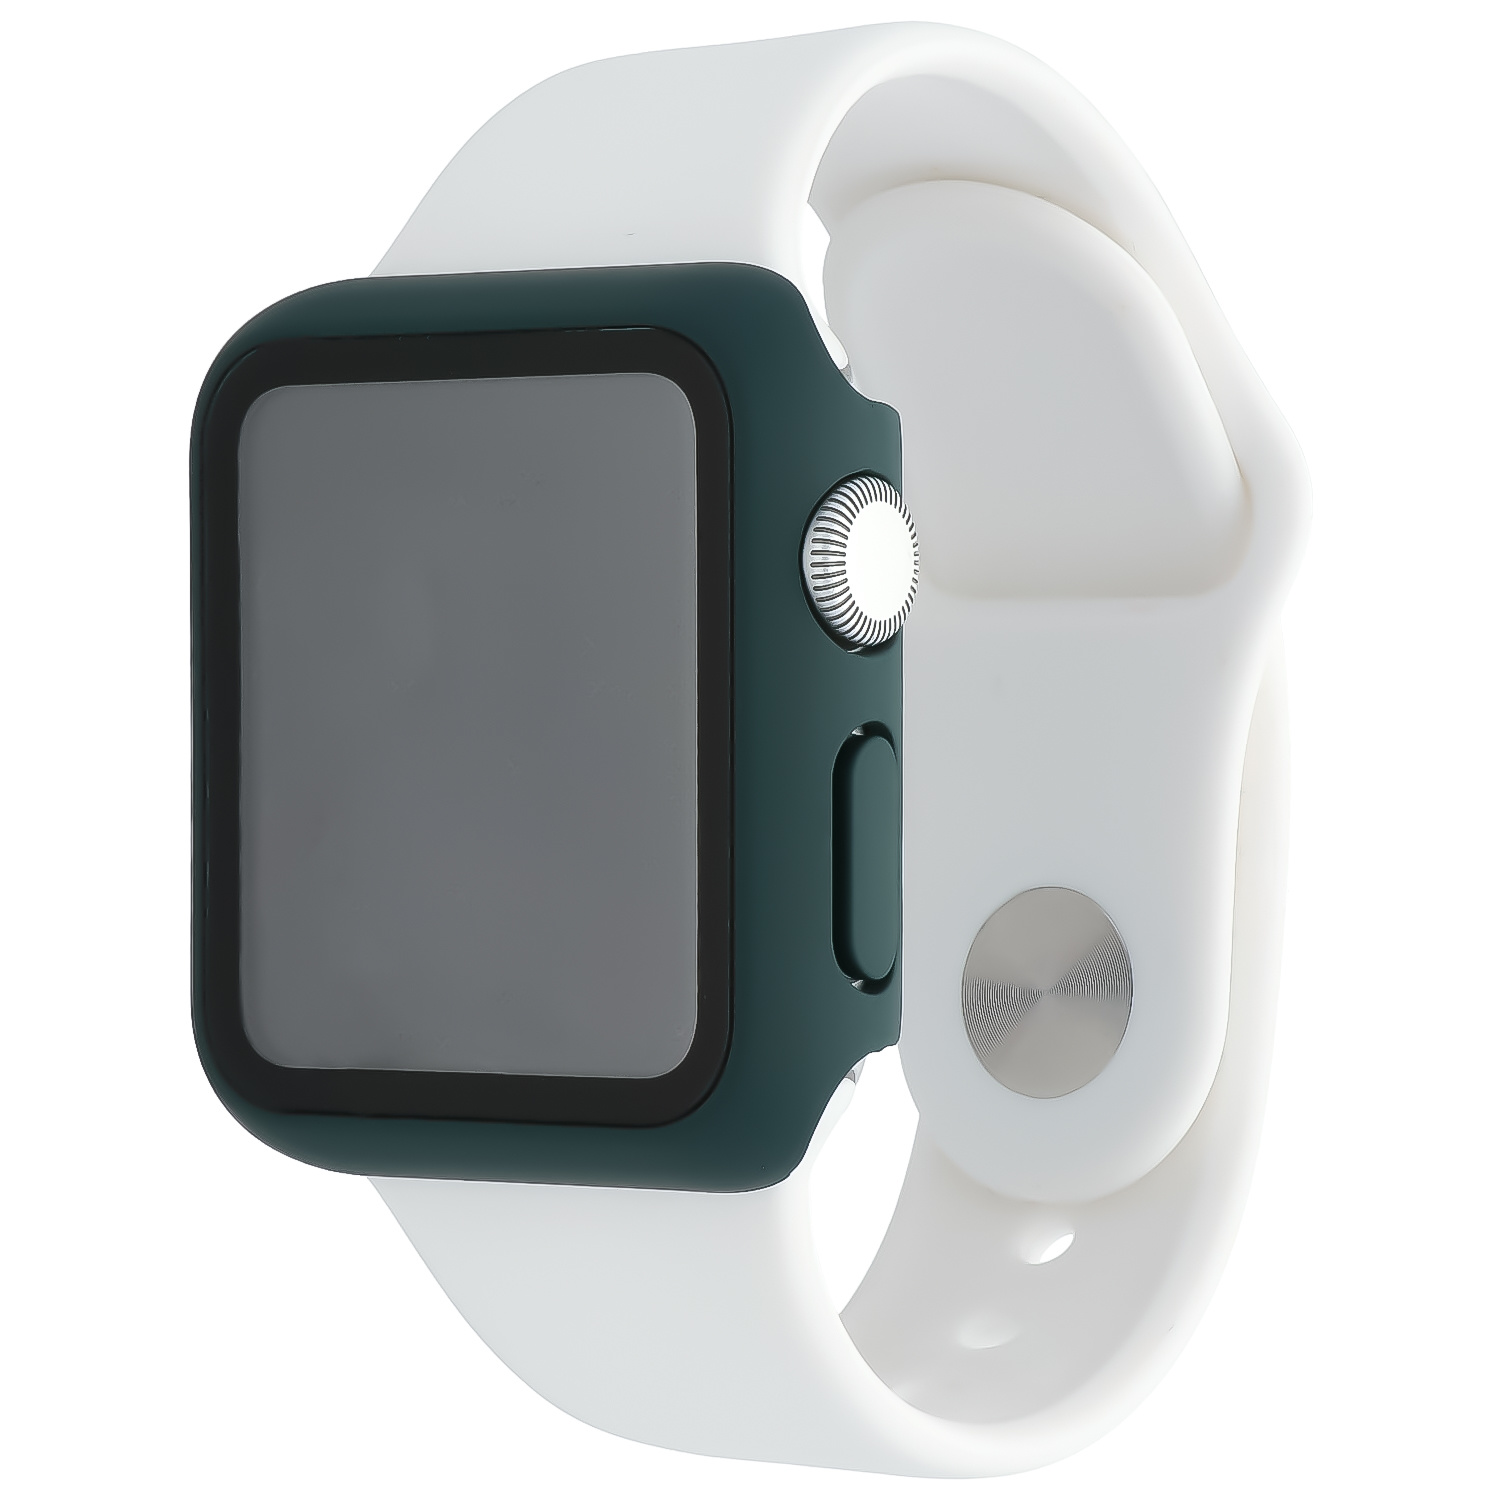 Estuche rígido para el Apple Watch - verde oscuro